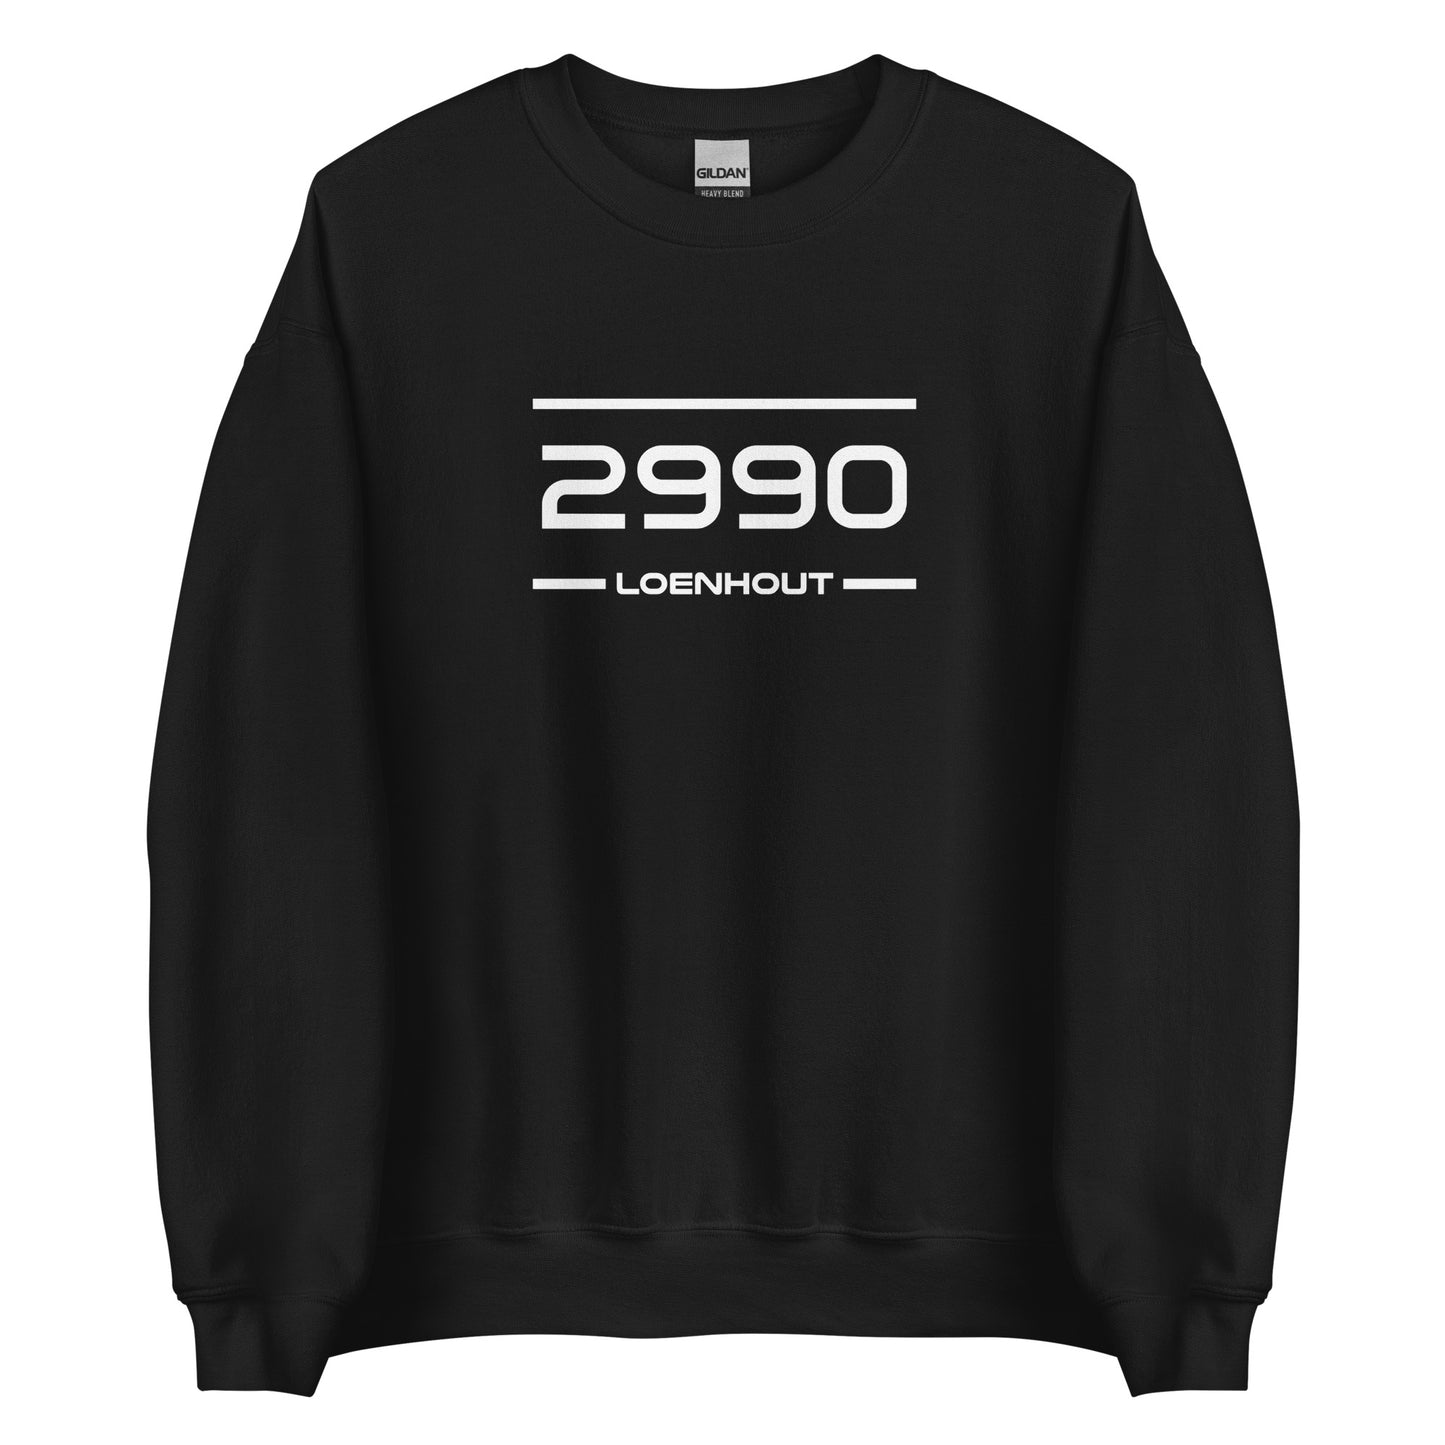 Sweater - 2990 - Loenhout (M/V)